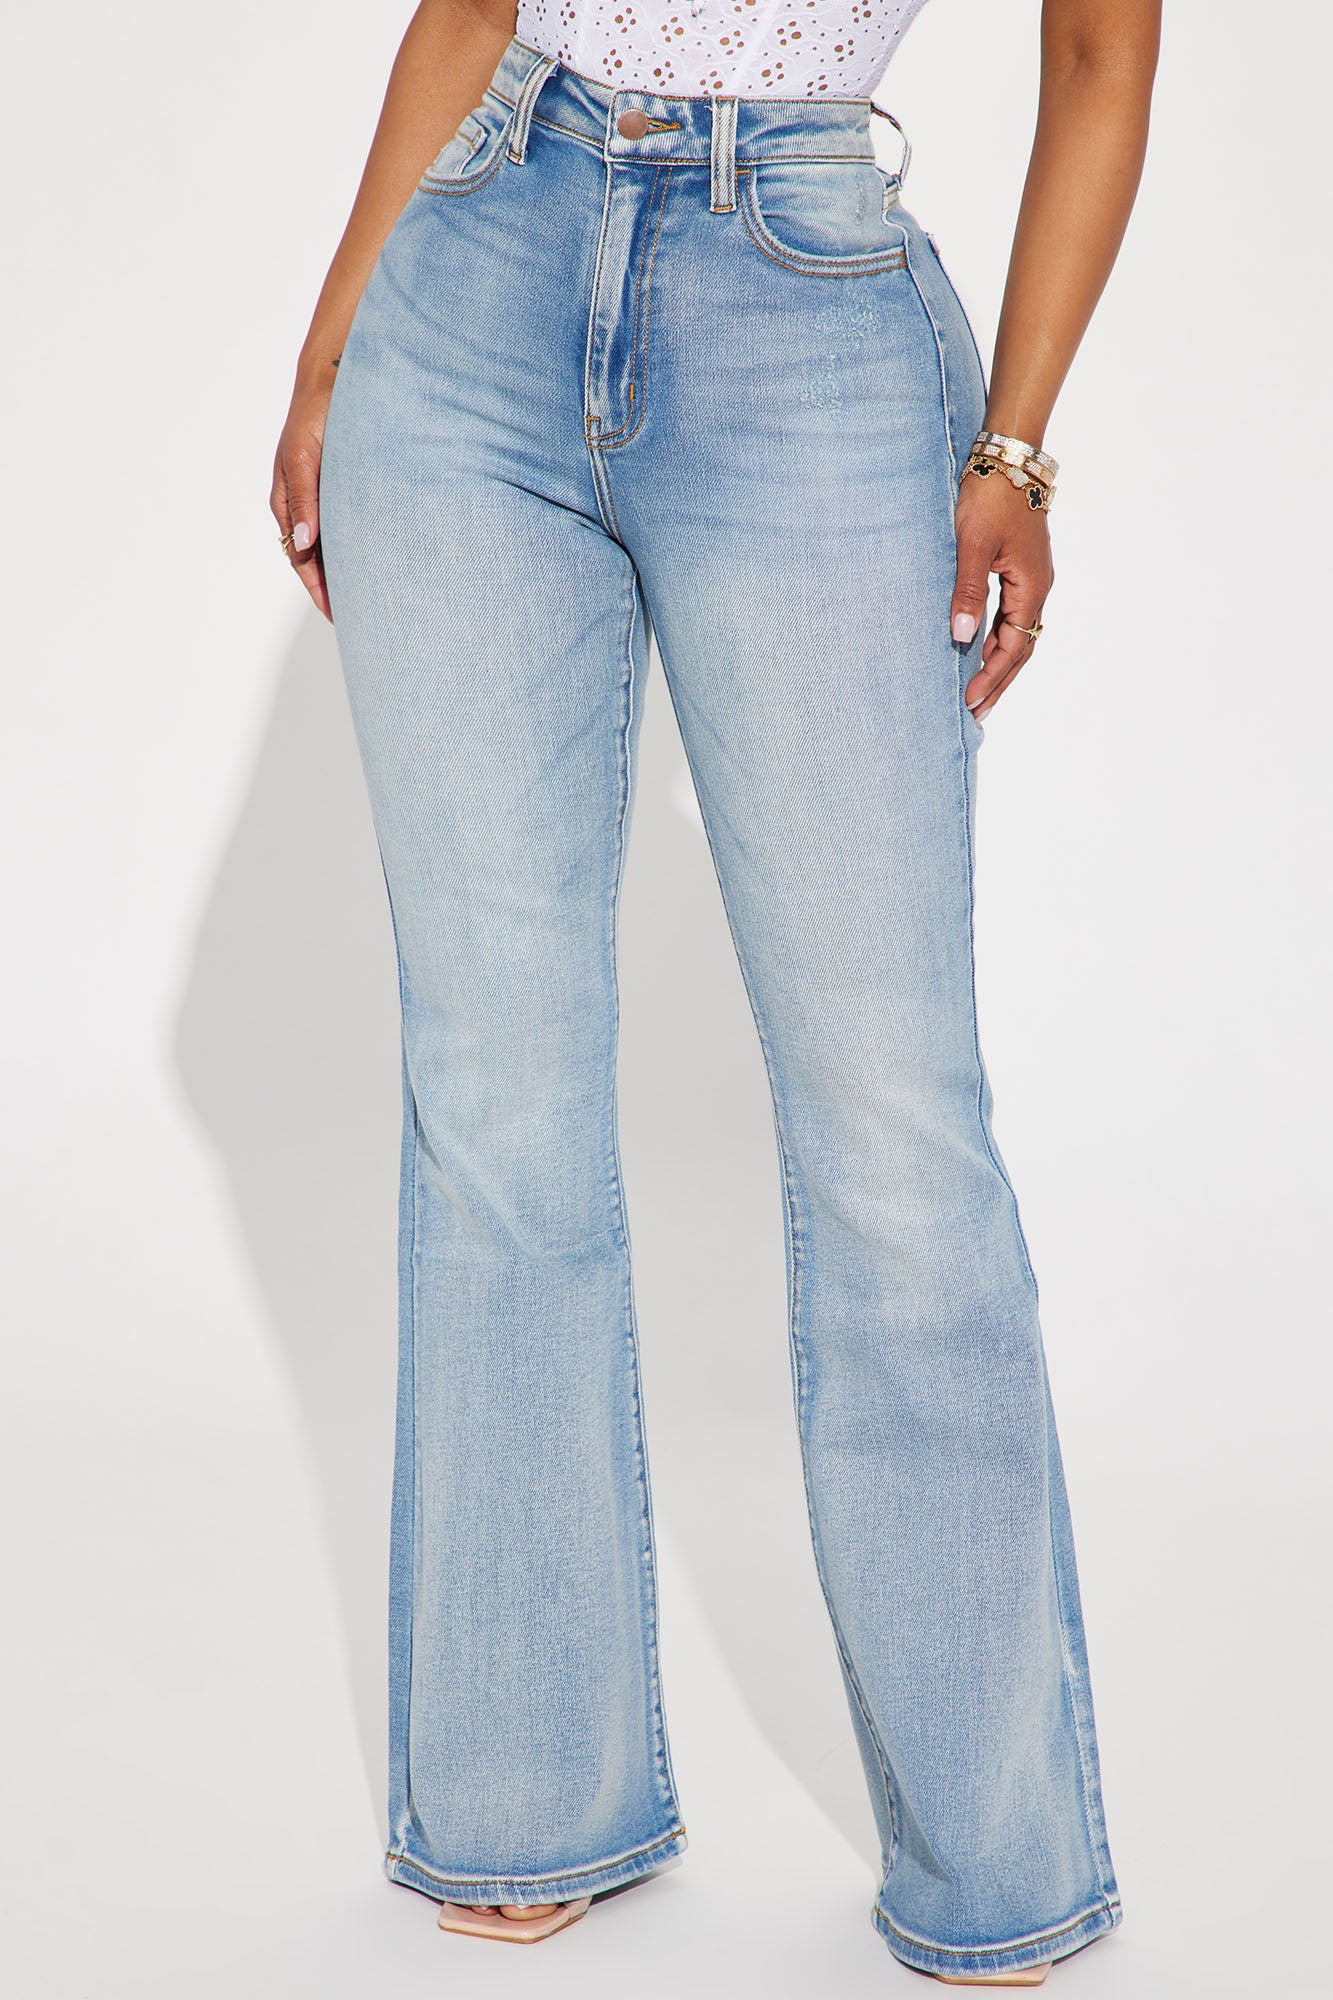 Hilary Hyper Stretch Flare Jeans - Olive, Fashion Nova, Jeans